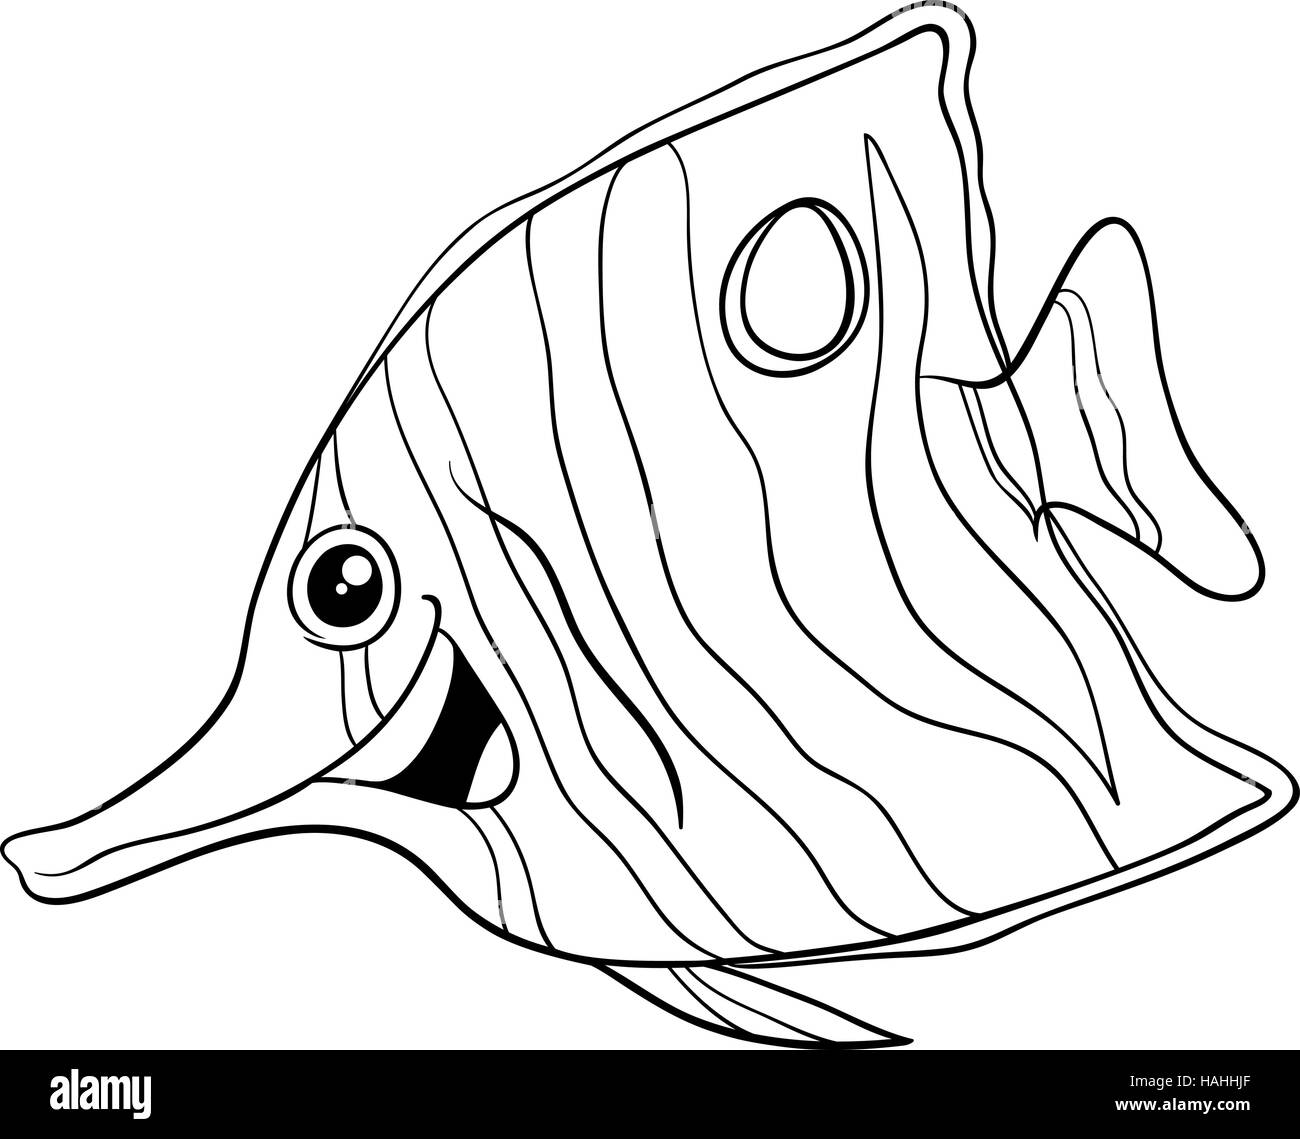 Ilustración caricatura en blanco y negro de Sixspine o peces mariposa exótica vida marina de carácter Animal Página para colorear Ilustración del Vector